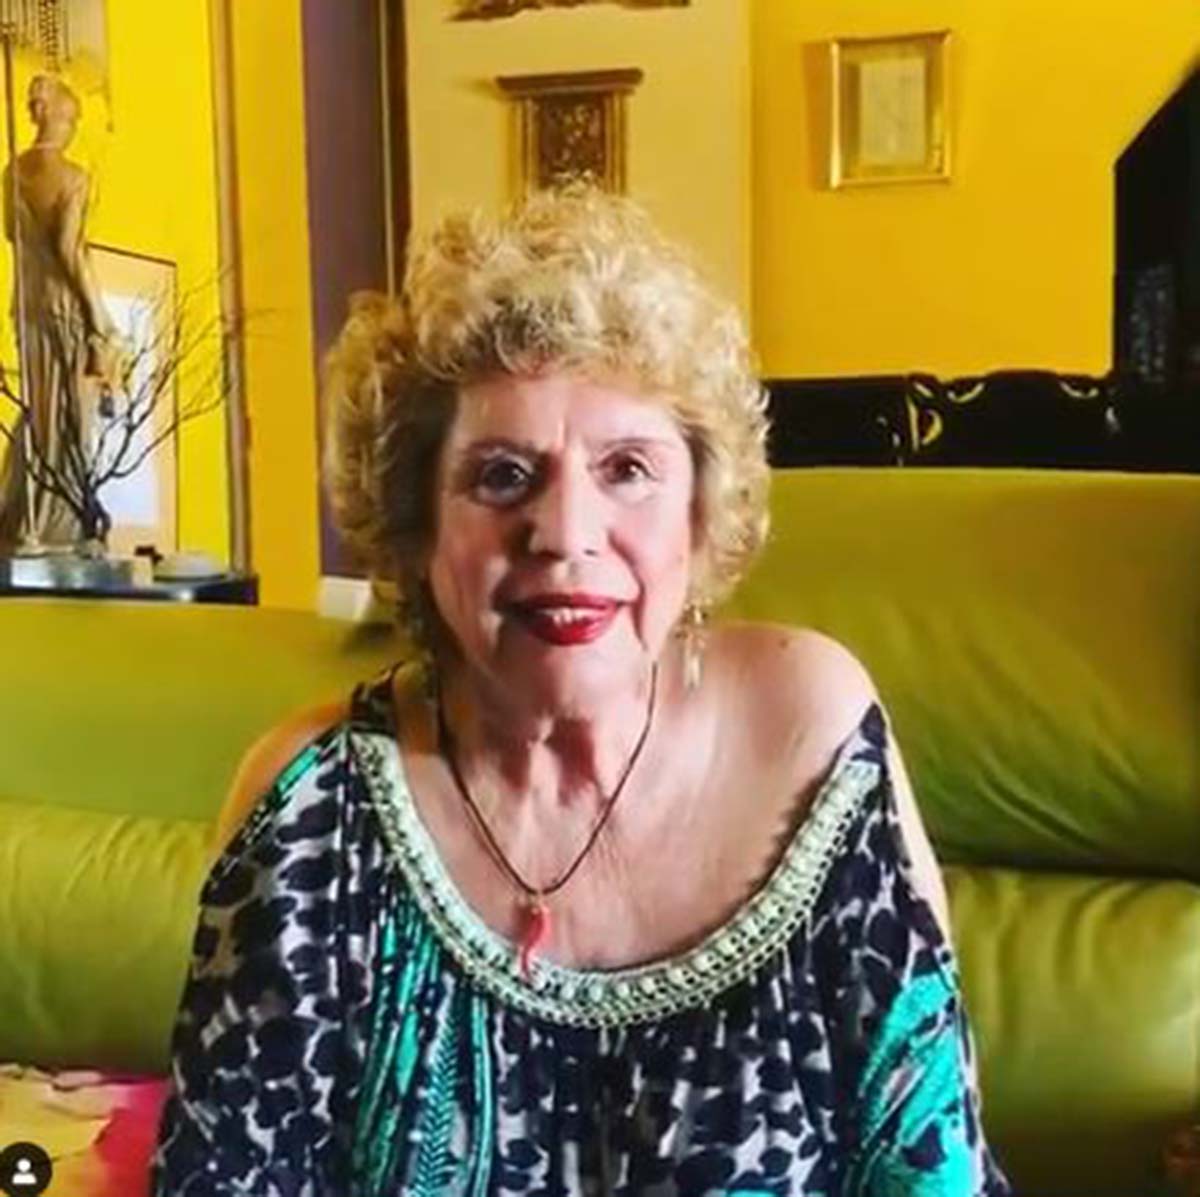 María Jiménez ha fallecido a los 73 años. En la imagen aparece en su casa muy sonriente